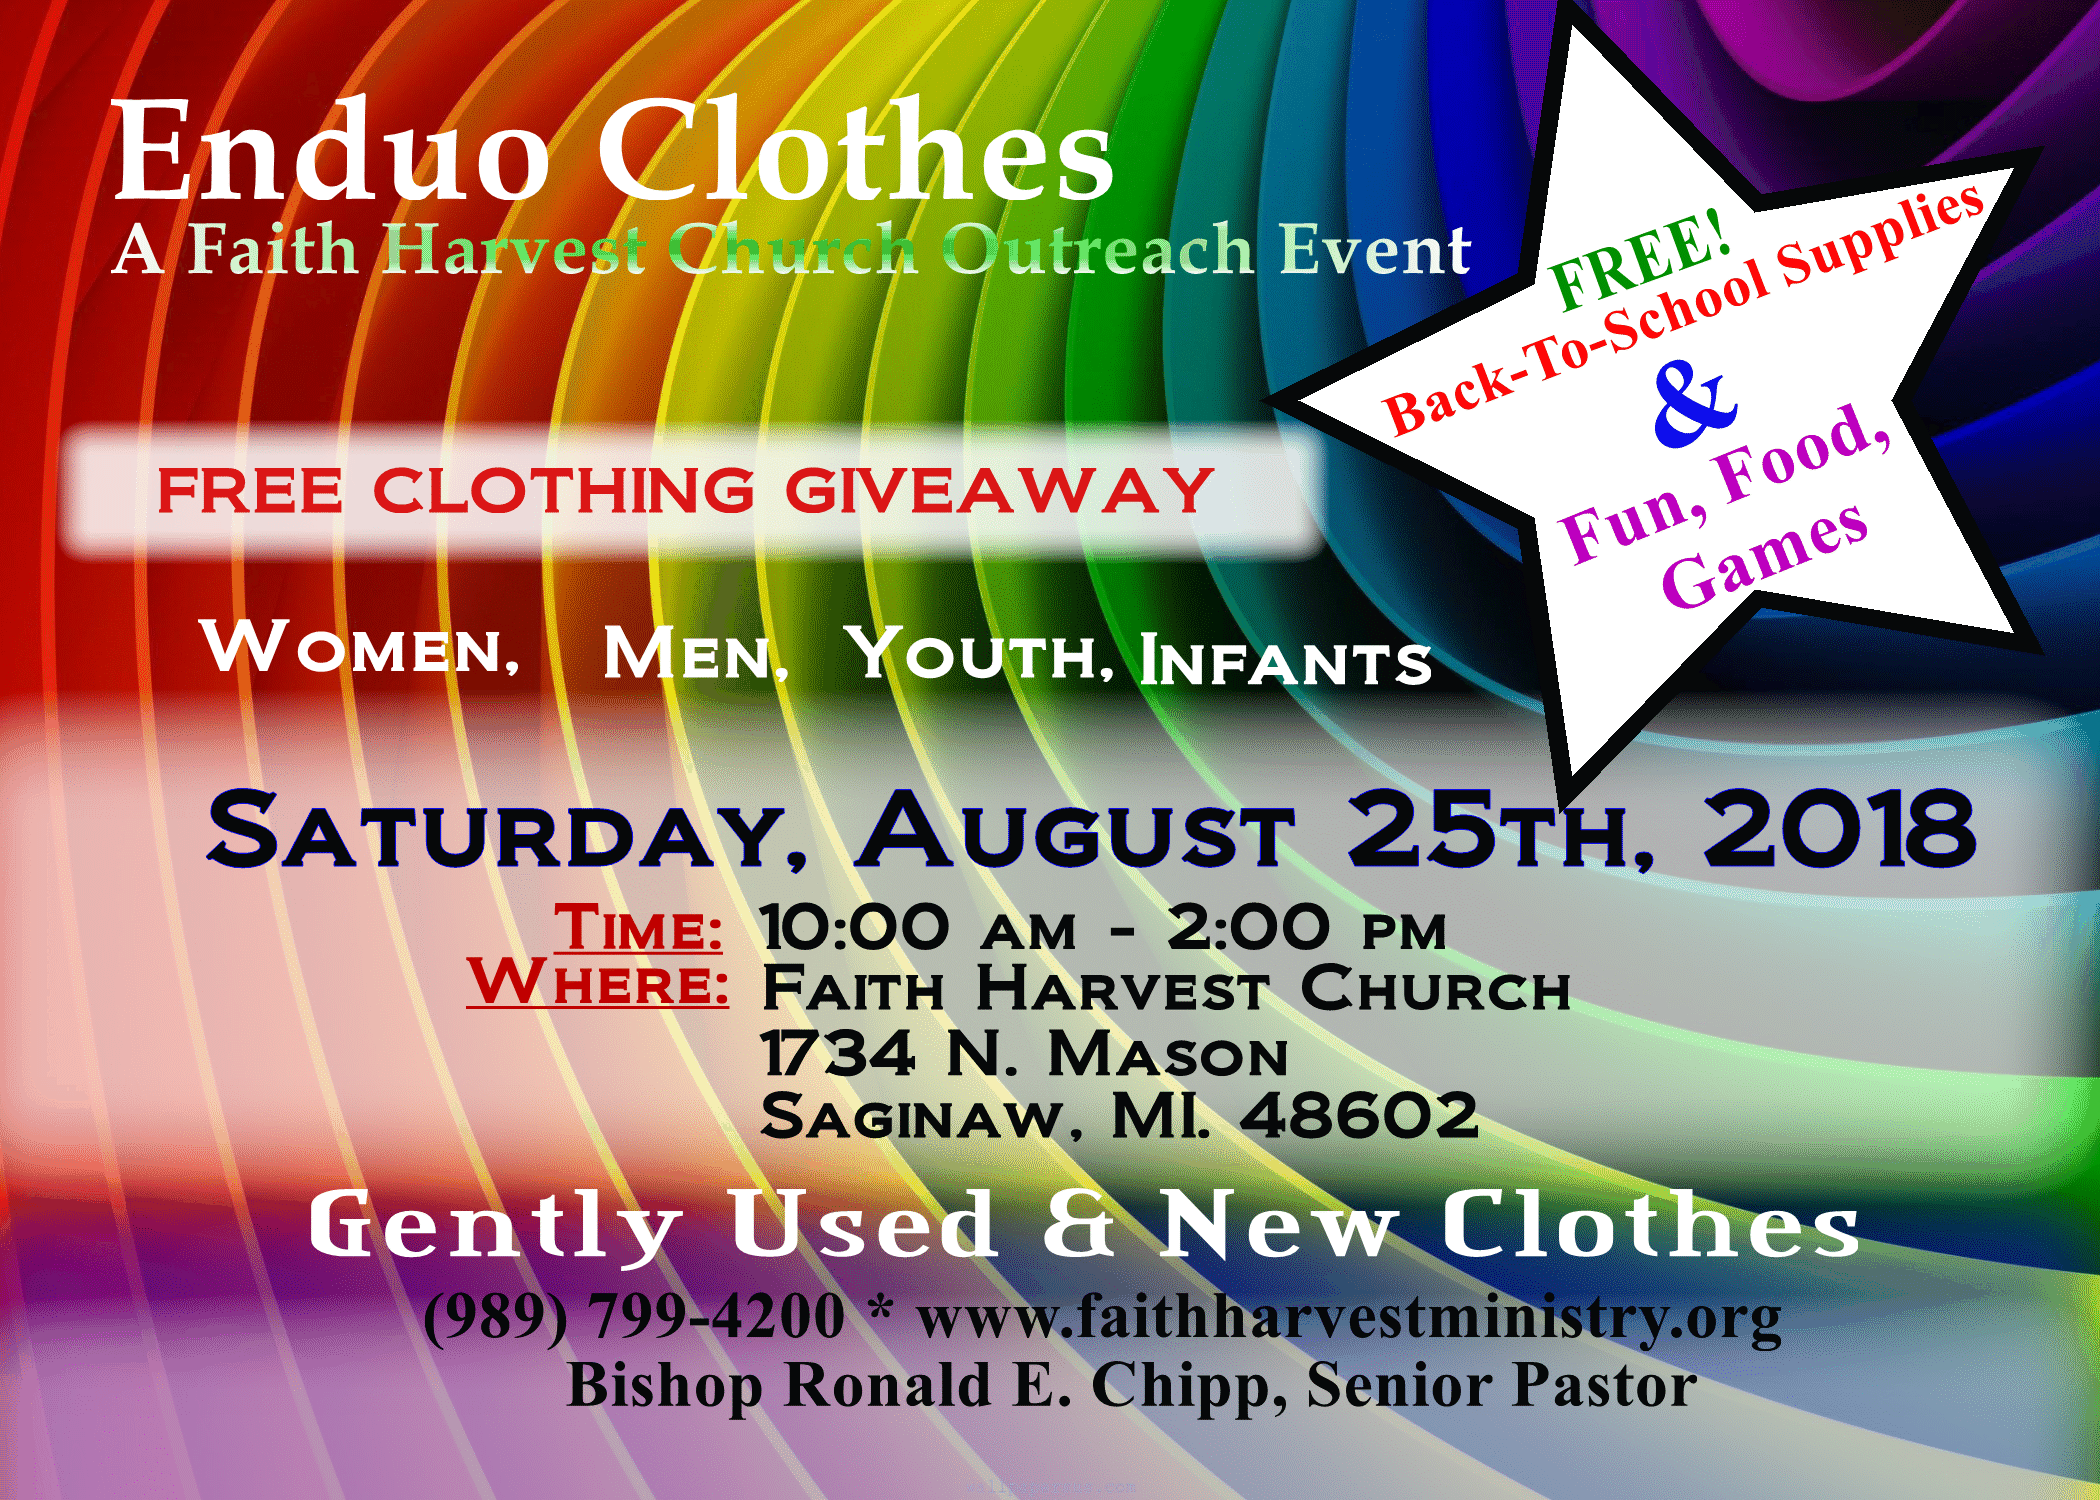 Enduo Clothes - Faith Harvest Church